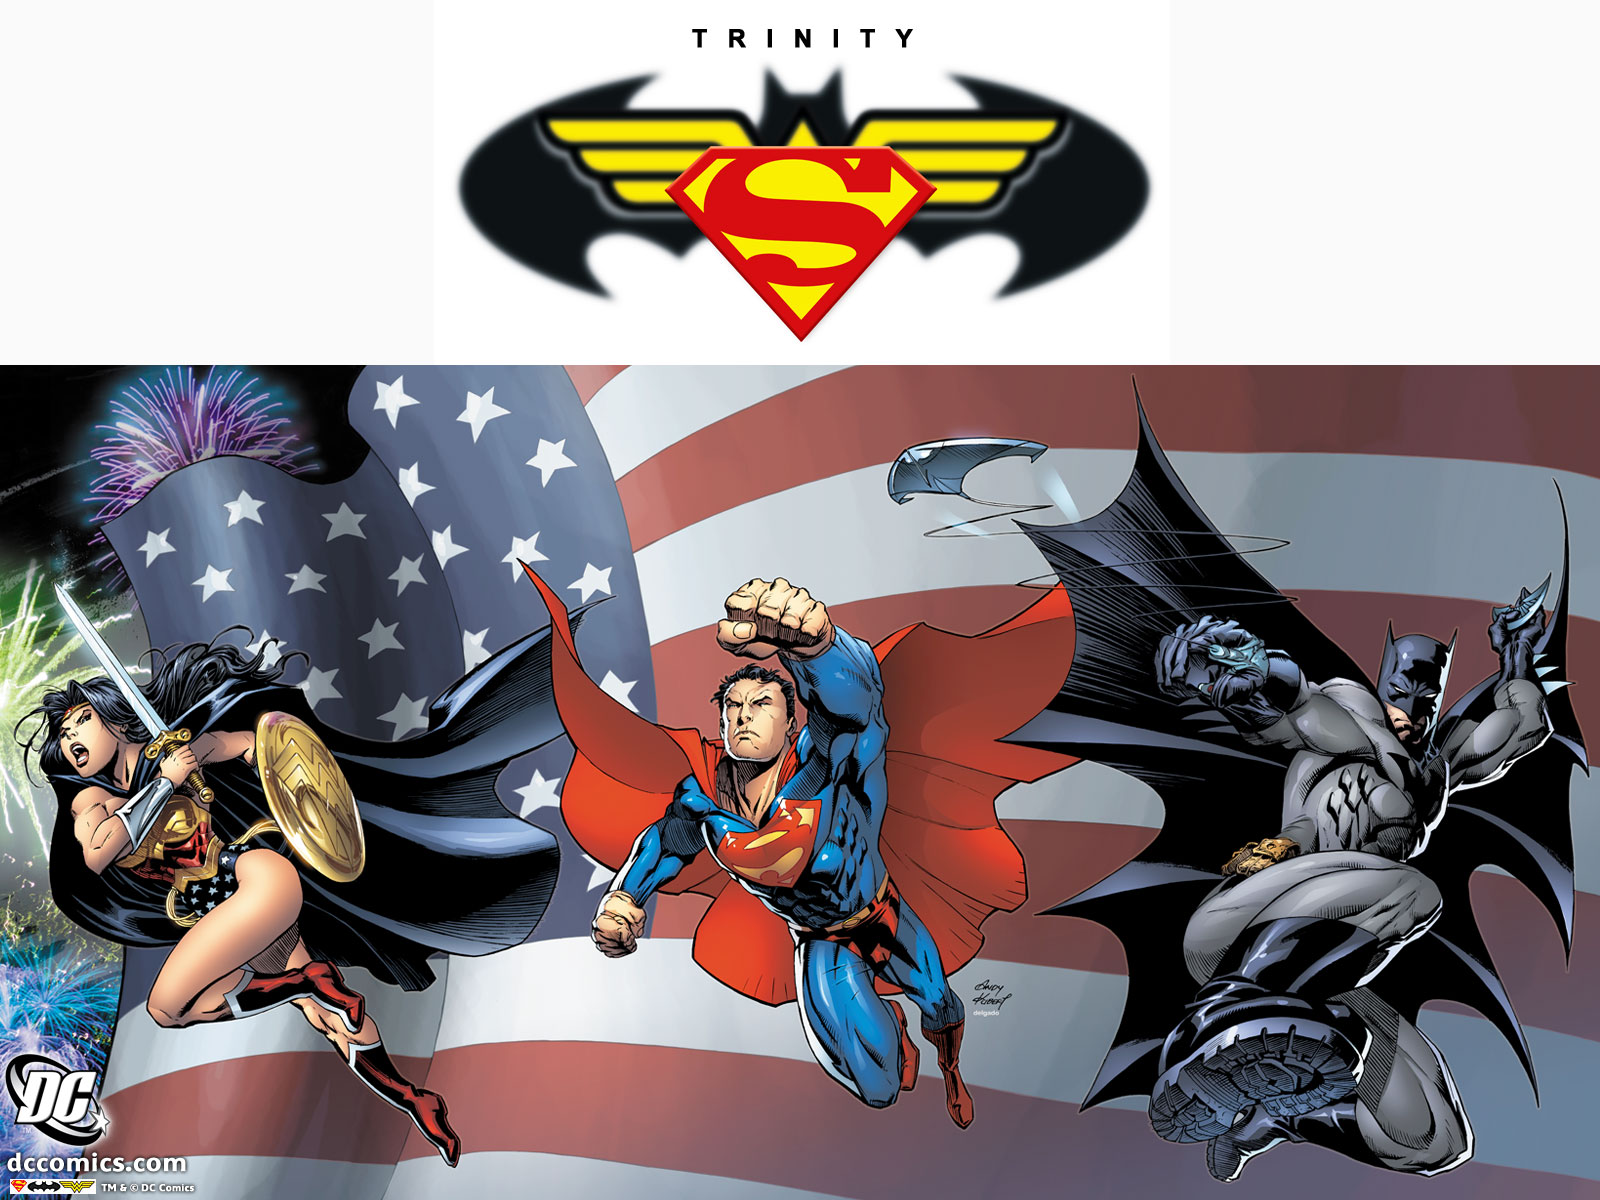 Descarga gratuita de fondo de pantalla para móvil de Superhombre, Historietas, Dc Comics, Hombre Murciélago, La Mujer Maravilla, Trinidad.